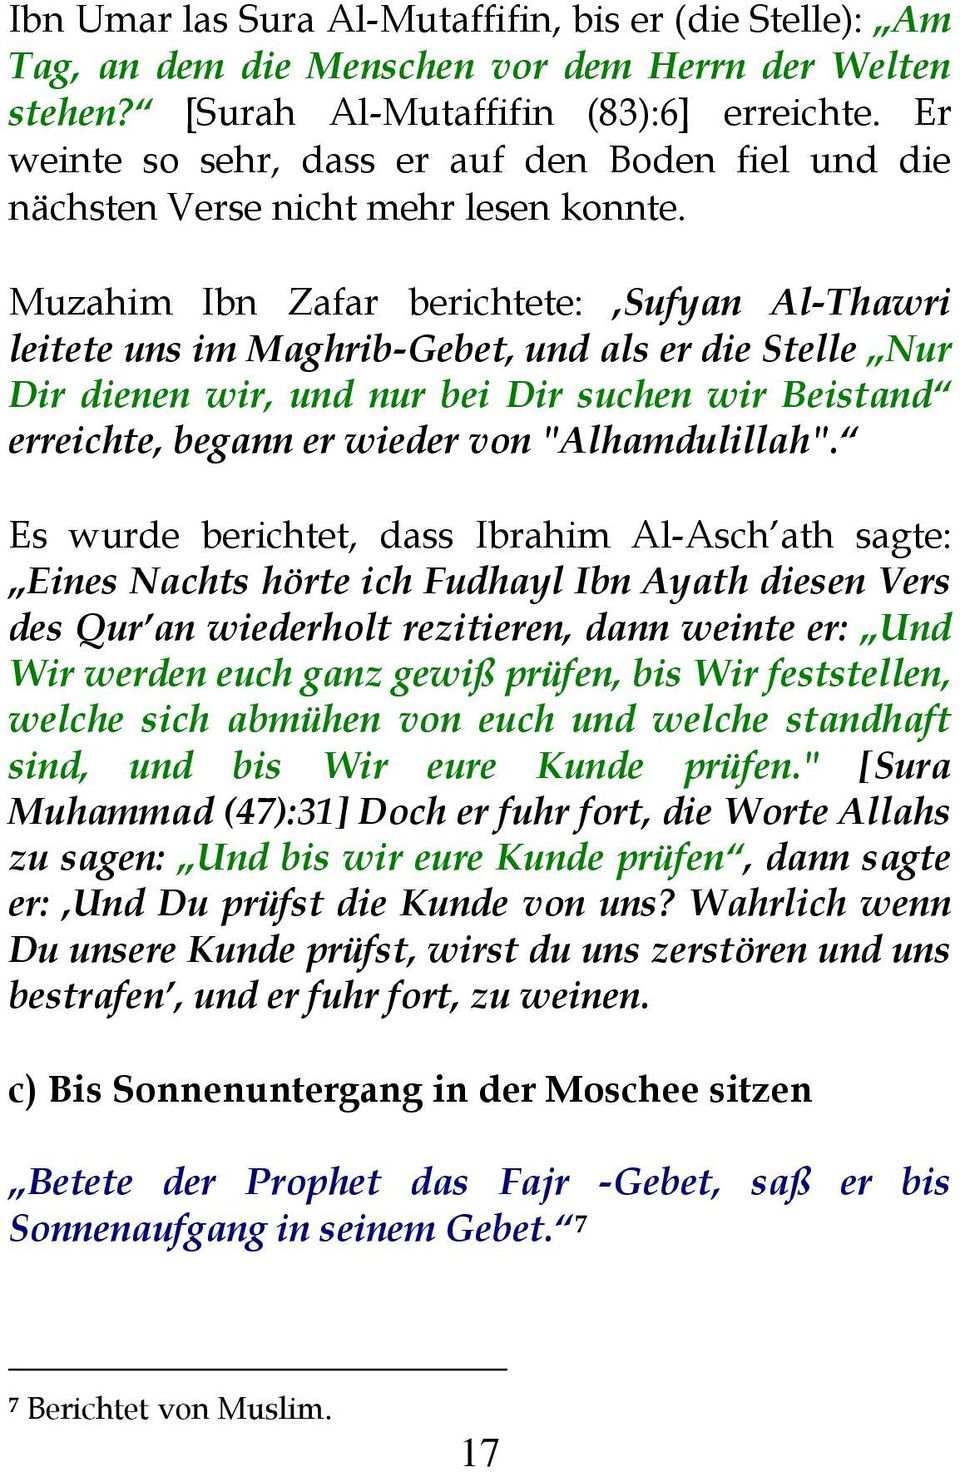 Muzahim Ibn Zafar berichtete: Sufyan Al-Thawri leitete uns im Maghrib-Gebet, und als er die Stelle Nur Dir dienen wir, und nur bei Dir suchen wir Beistand erreichte, begann er wieder von